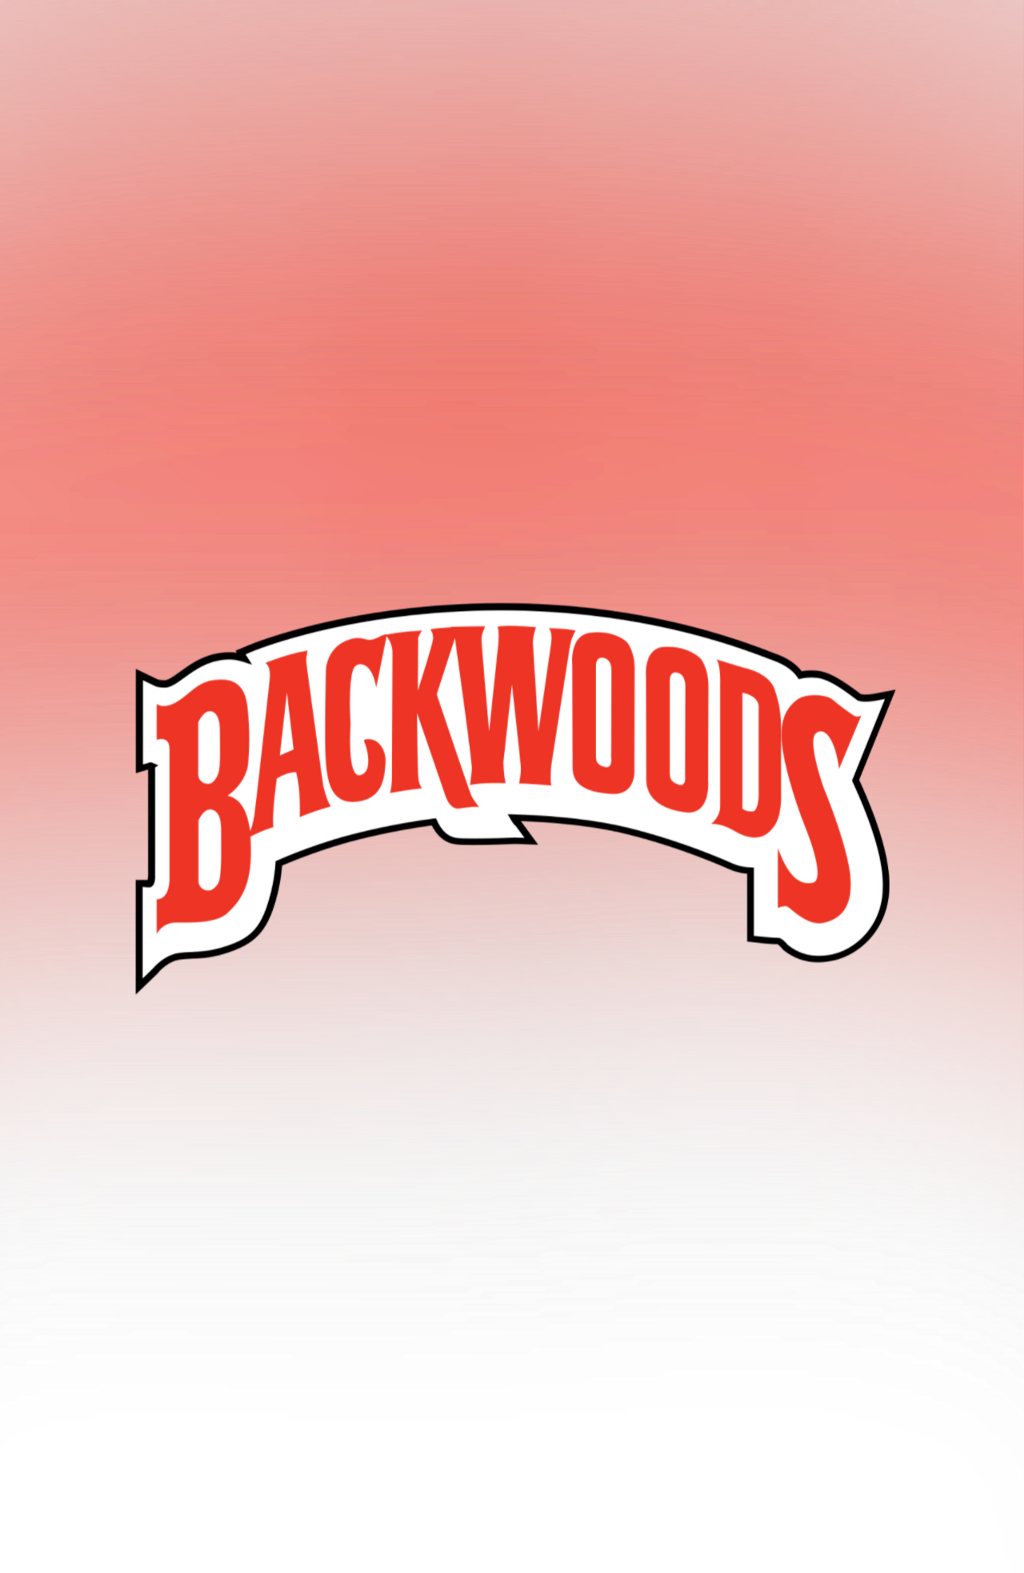 Backwood Png - Backwoods Cigars (1024x1573), Png Download